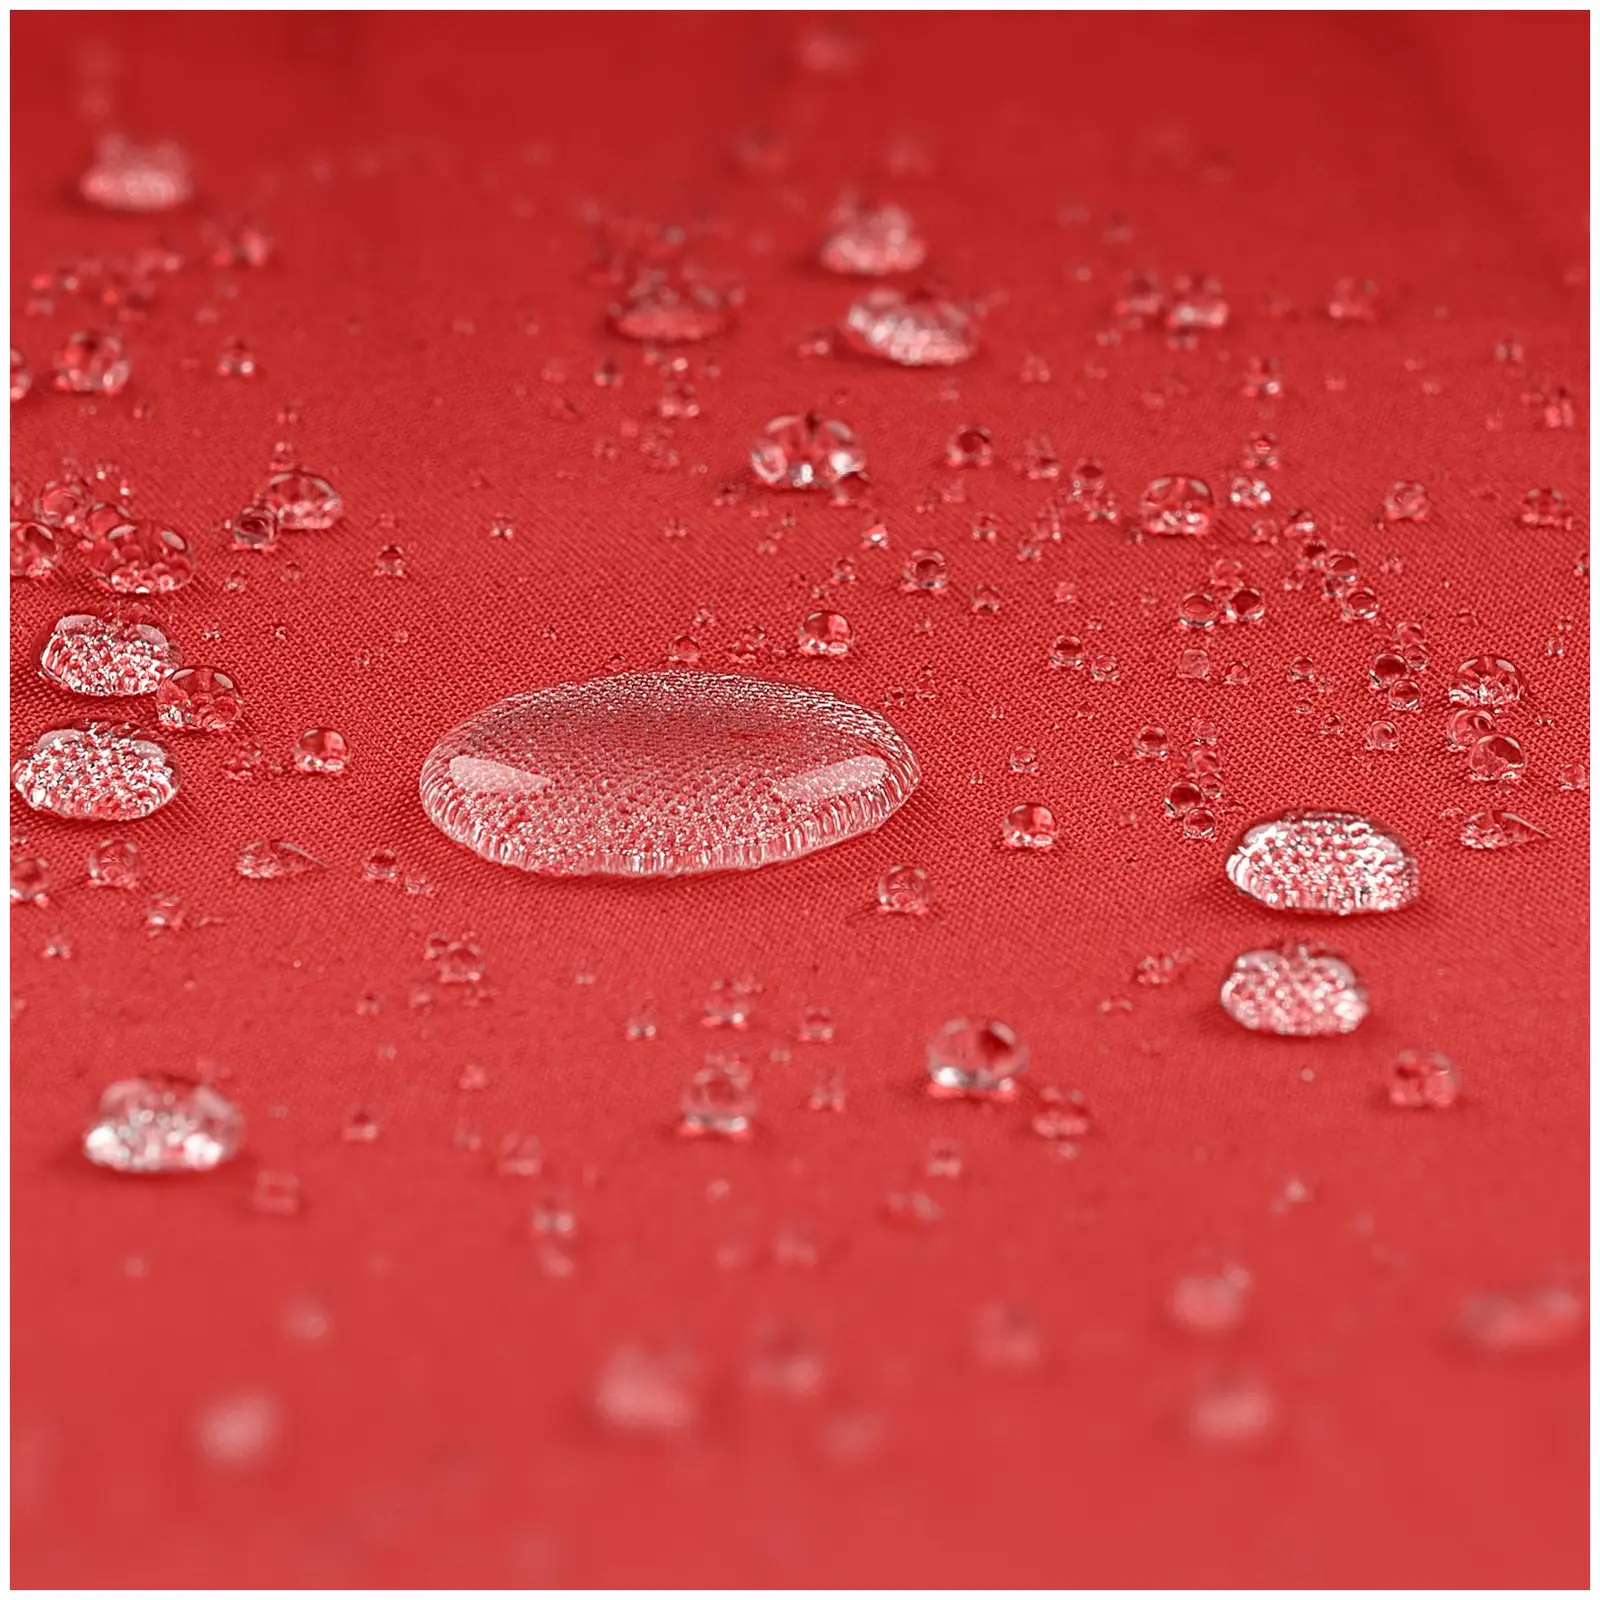 B-varer Stor parasoll - rød - rektangulær - 200 x 300 cm - kan skråstilles